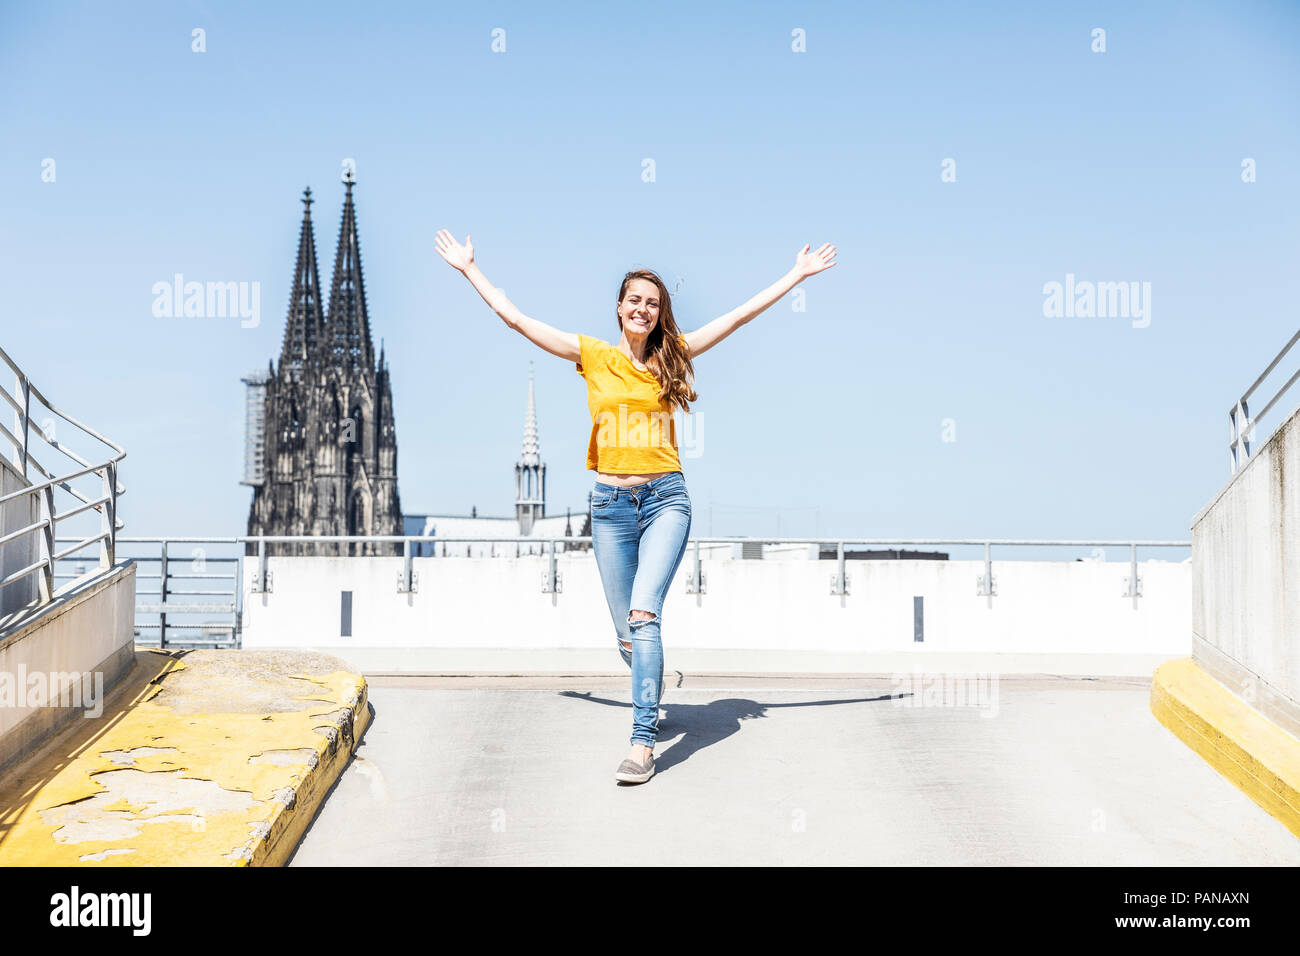 Germania, Colonia, donna felice sulla rampa del parcheggio a livello con la cattedrale di Colonia in background Foto Stock